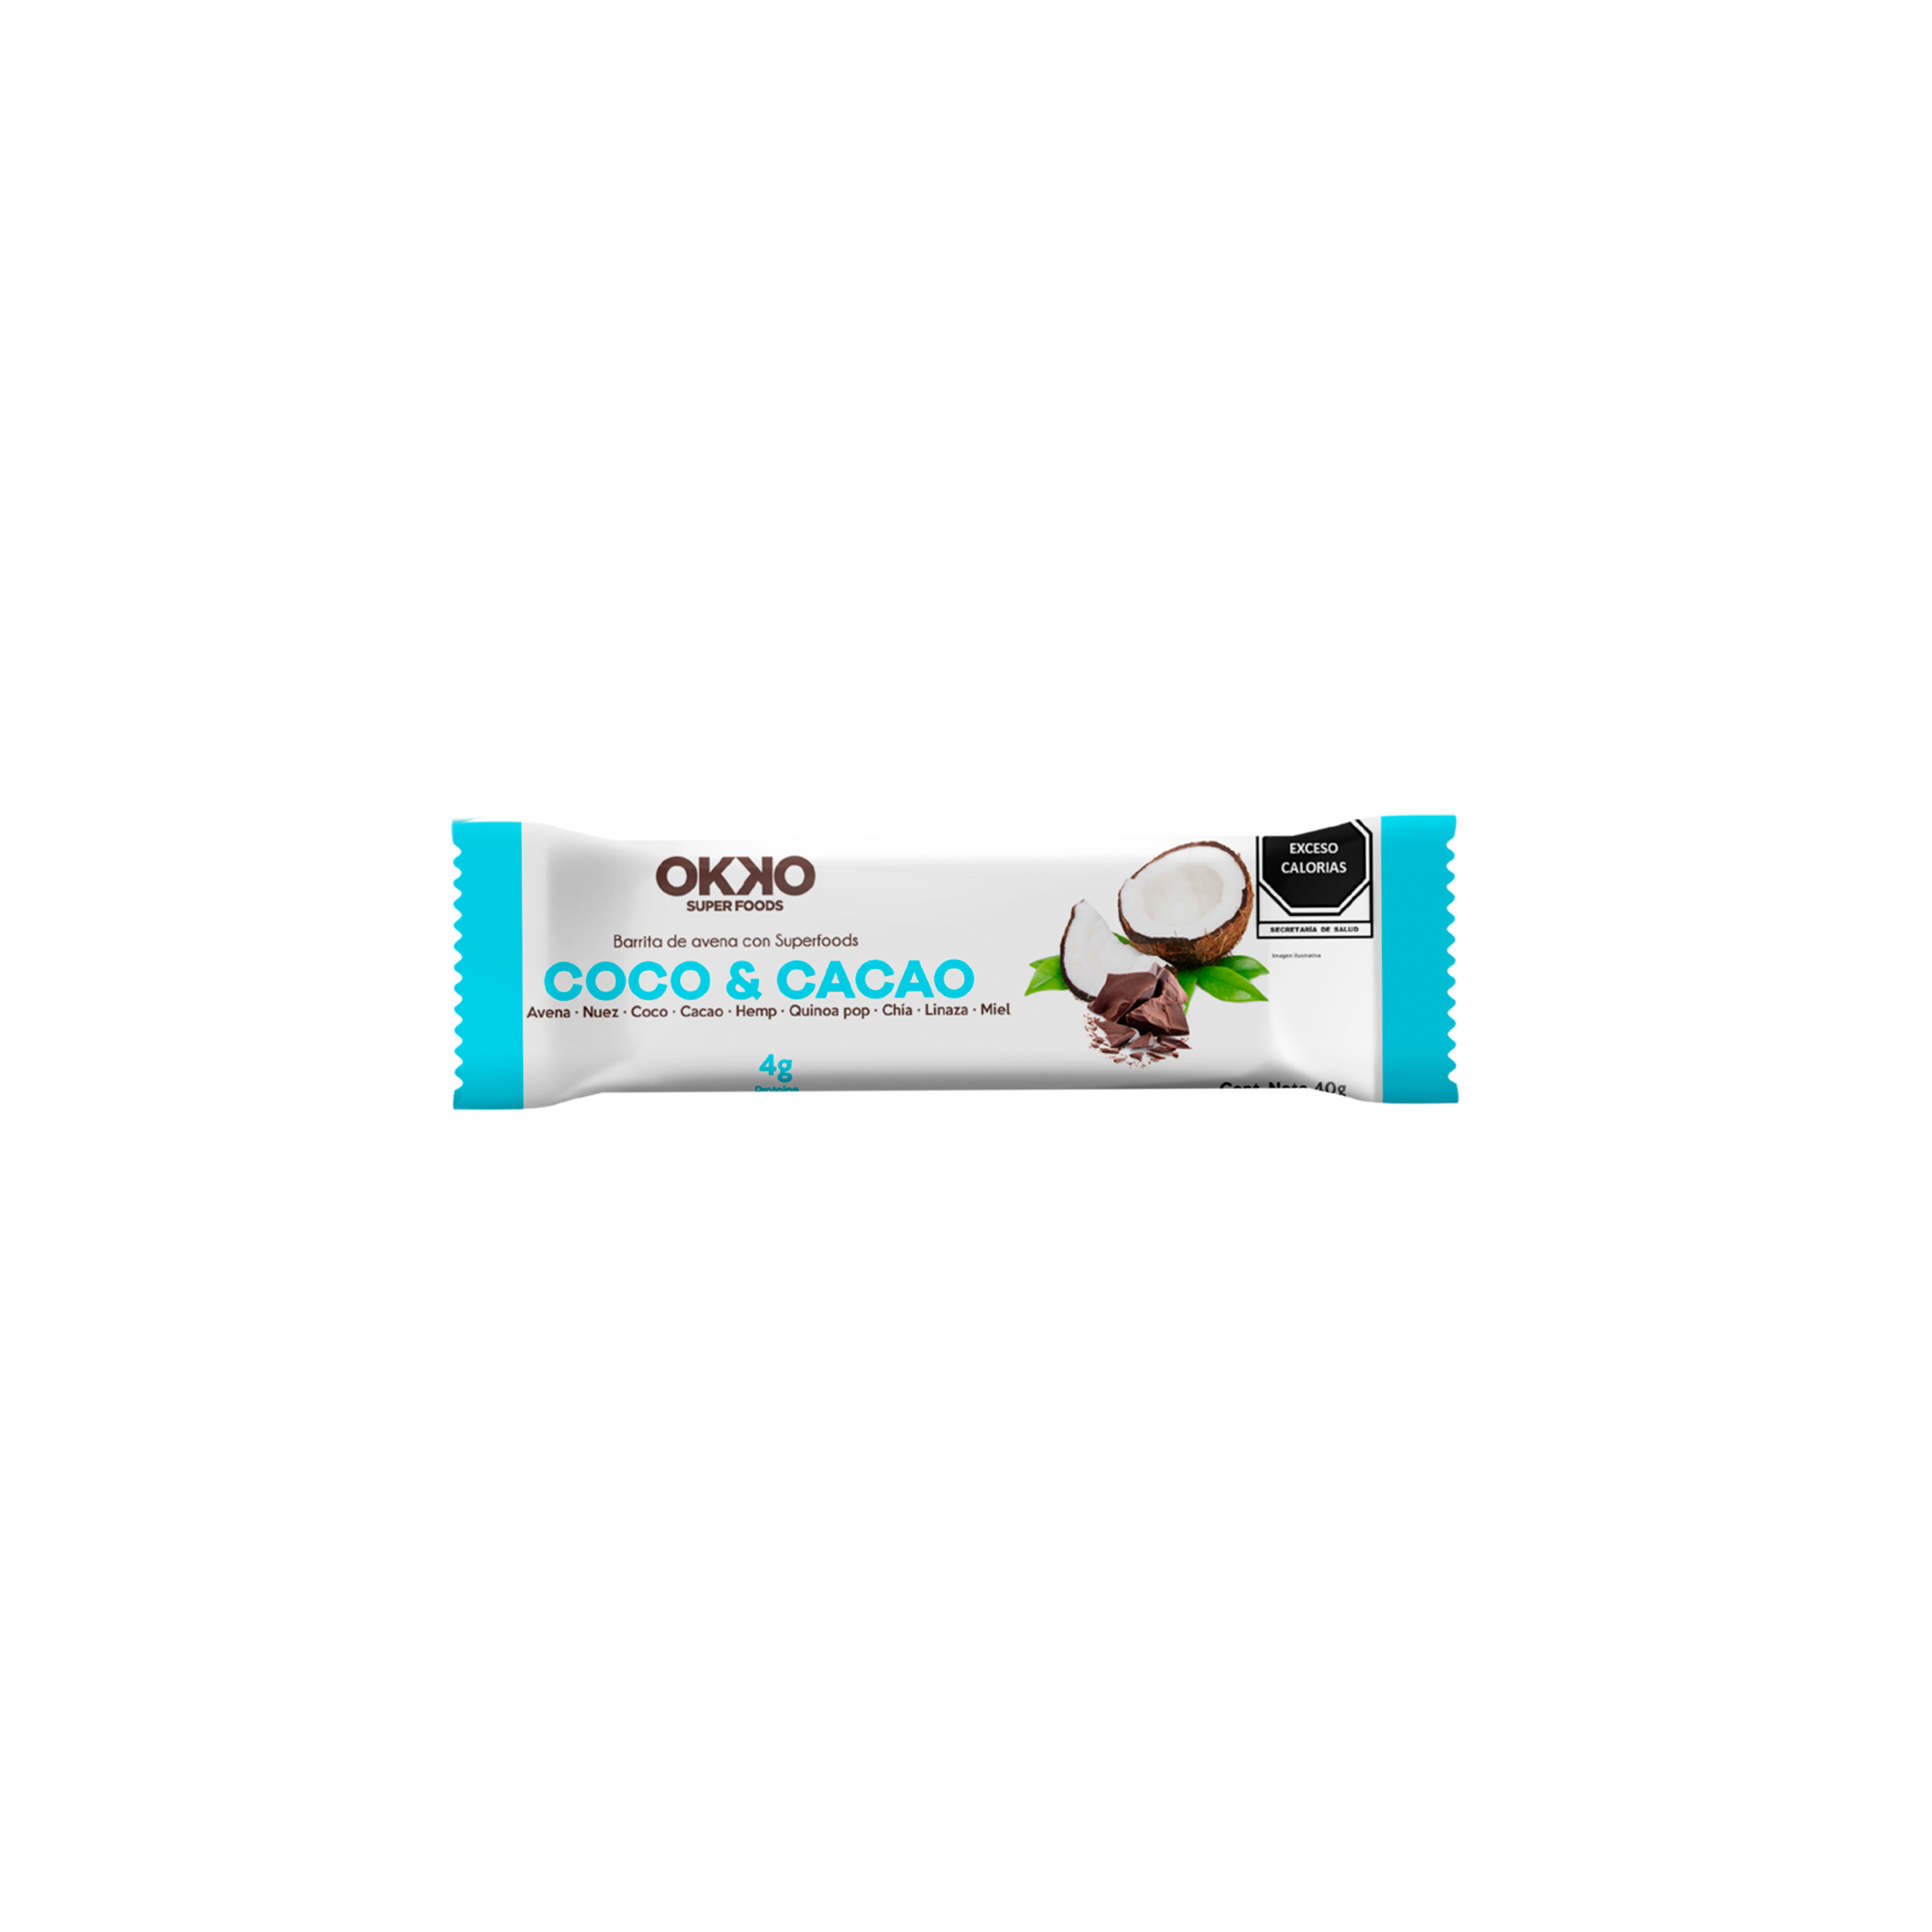 OKKO - Barritas de Coco y Cacao